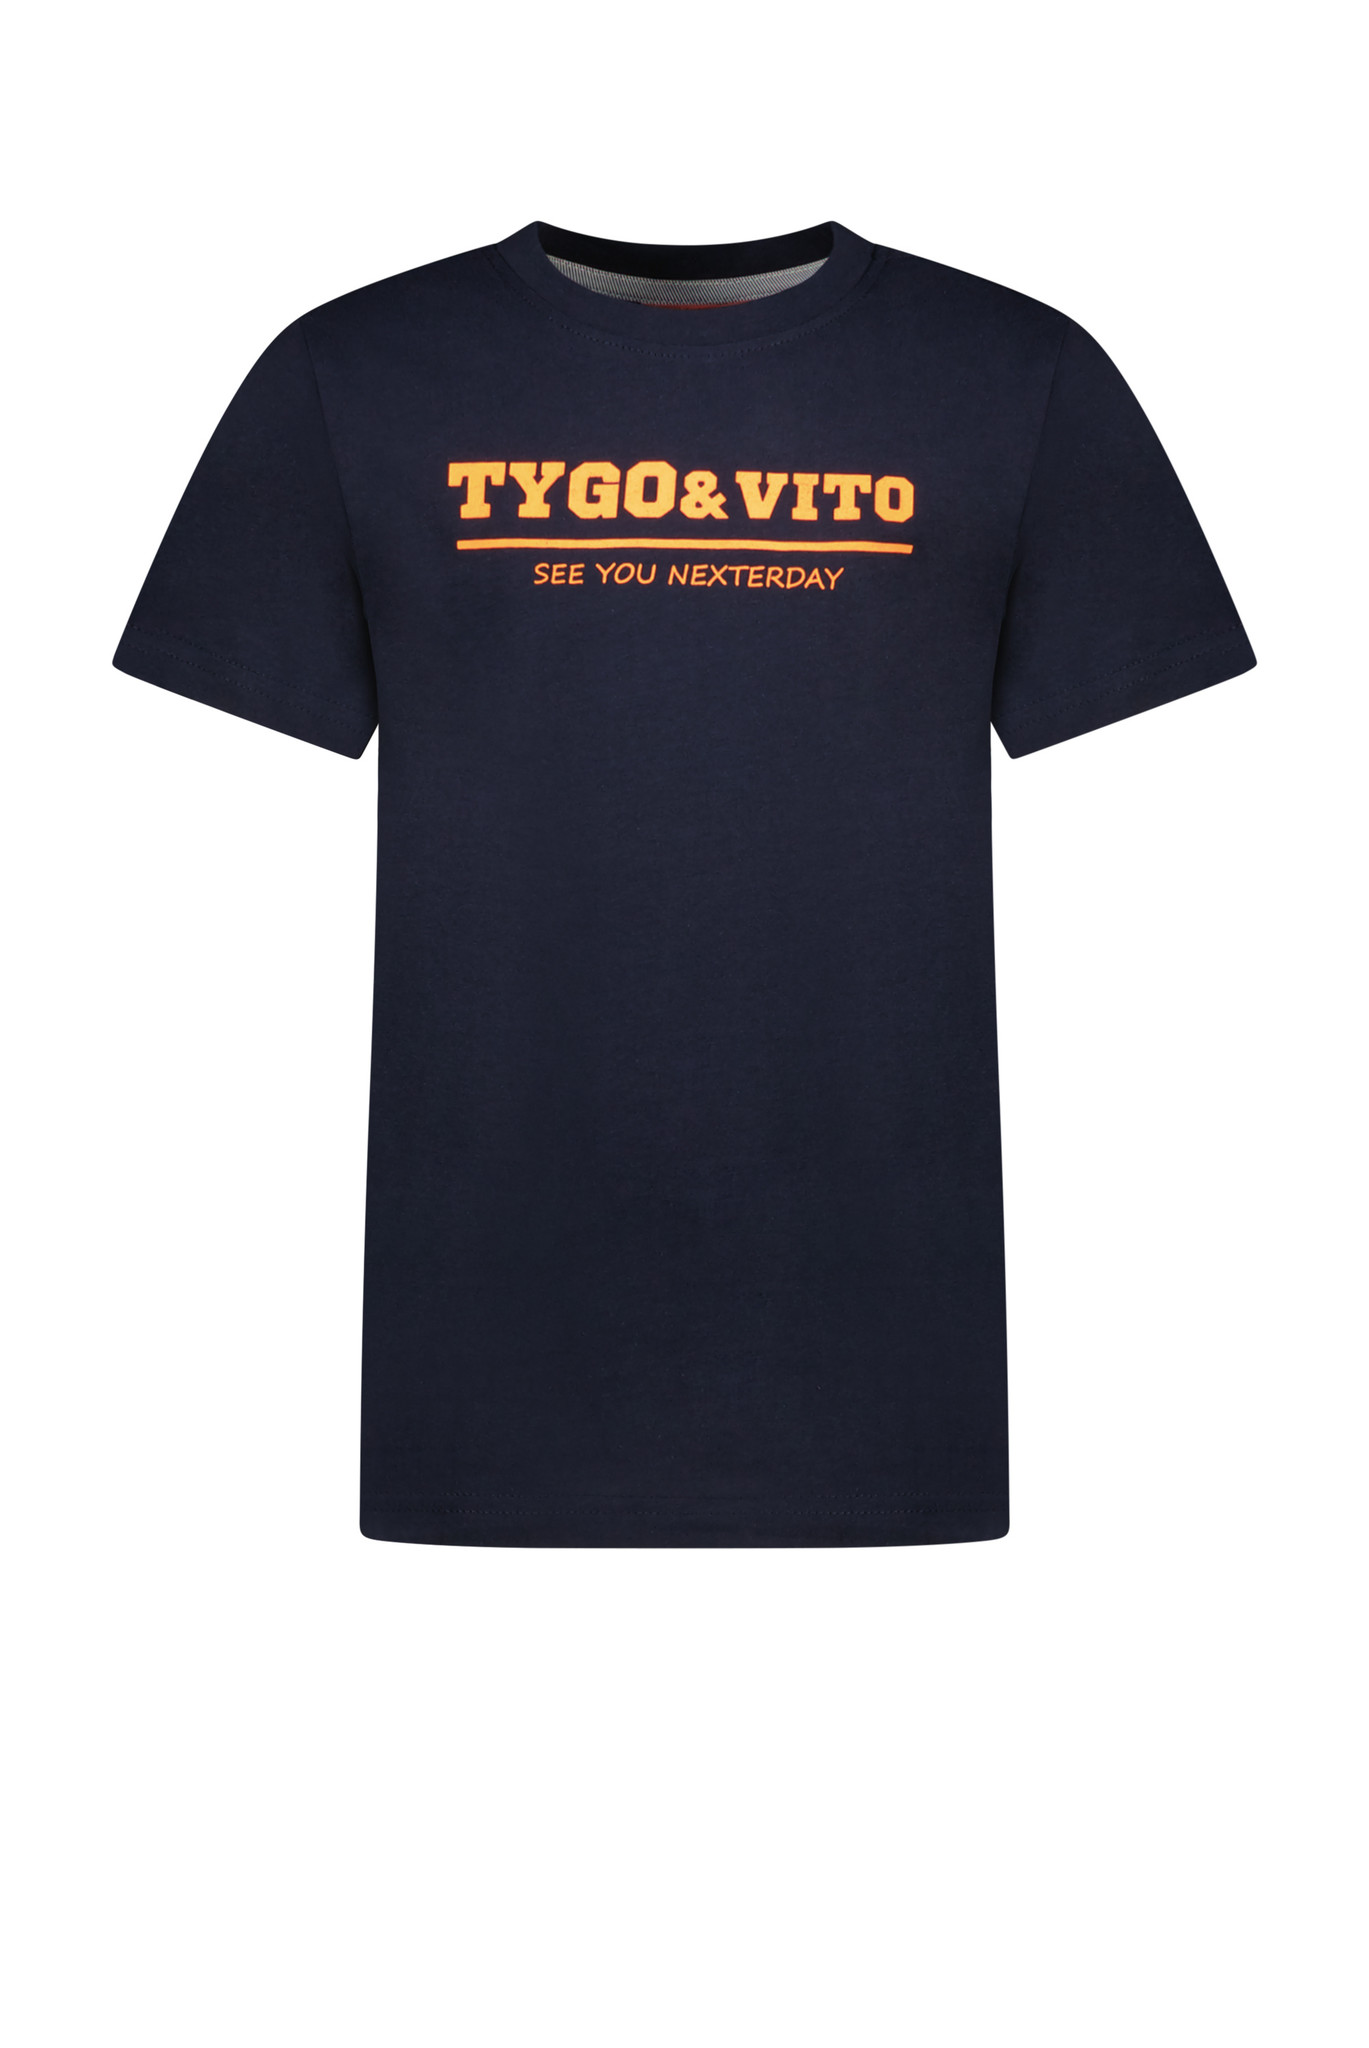 Tygo & Vito Jongens t-shirt logo - Navy blauw